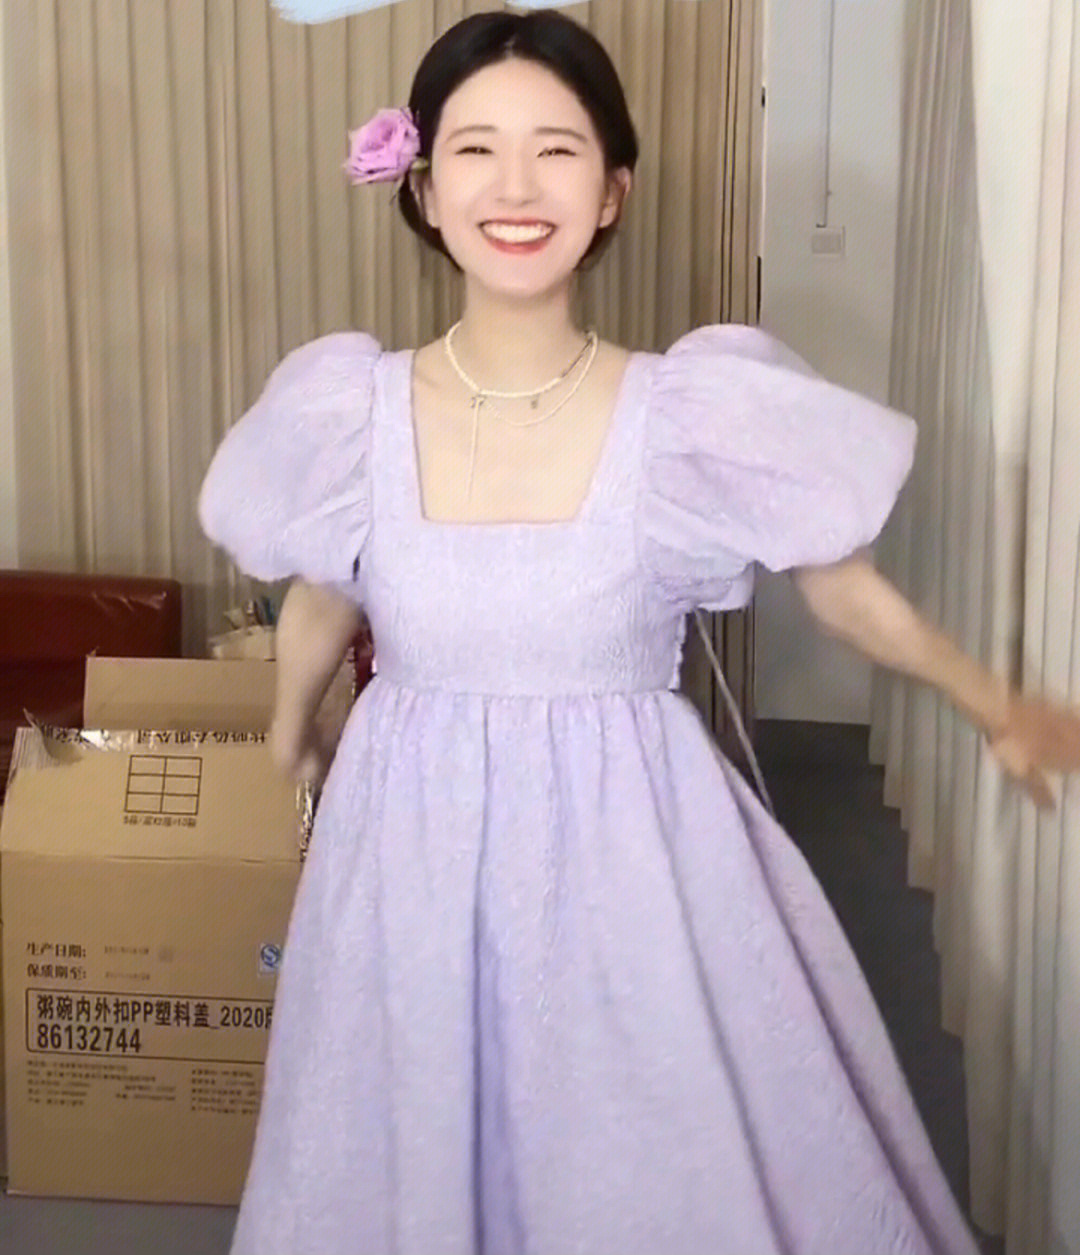 测评赵露思同款紫色连衣裙真实测评露思小公主这款紫色连衣裙看起来